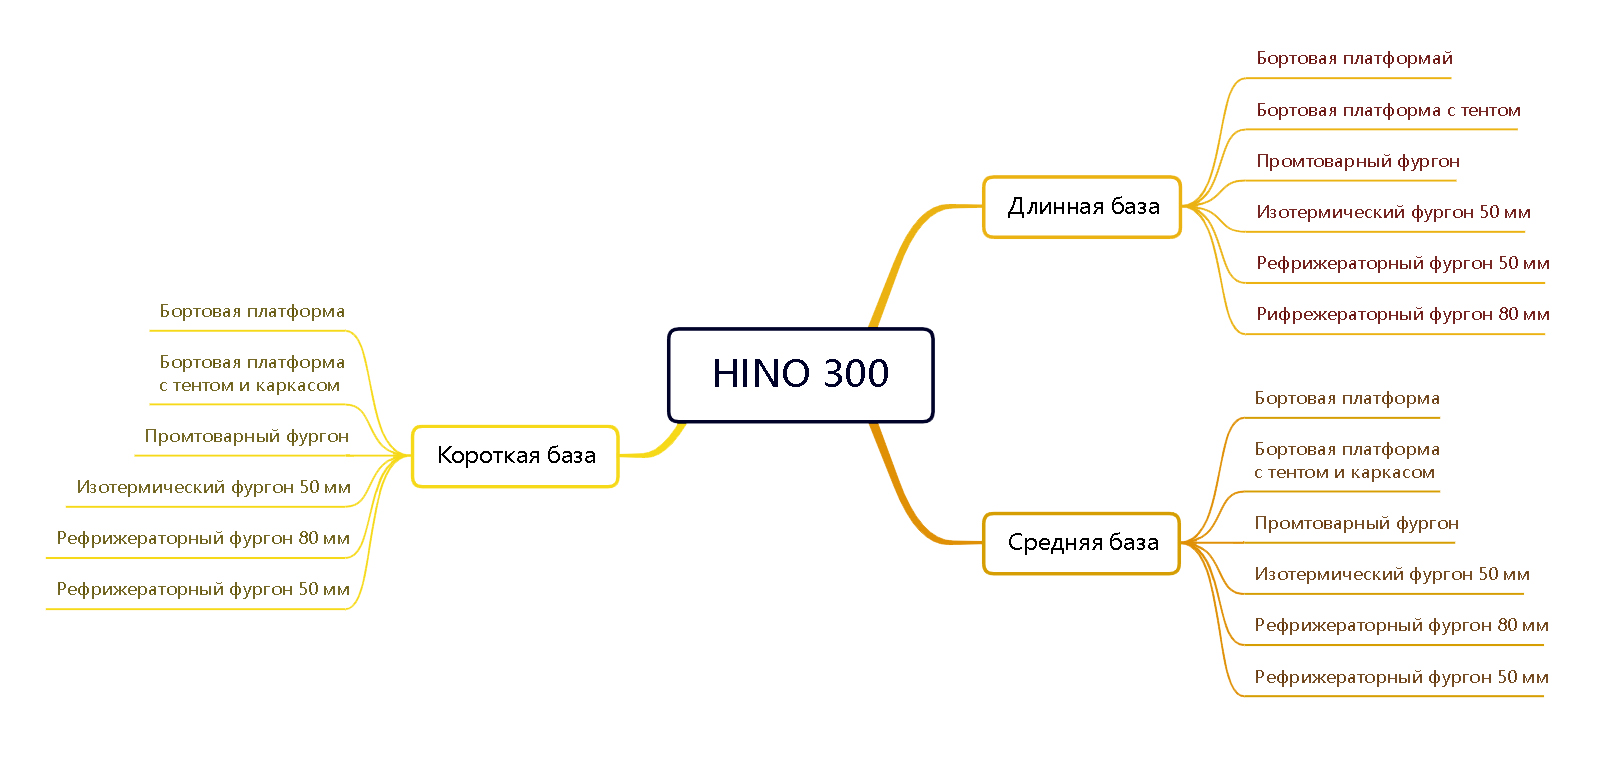 Структура раздела на примере модели Hino 300